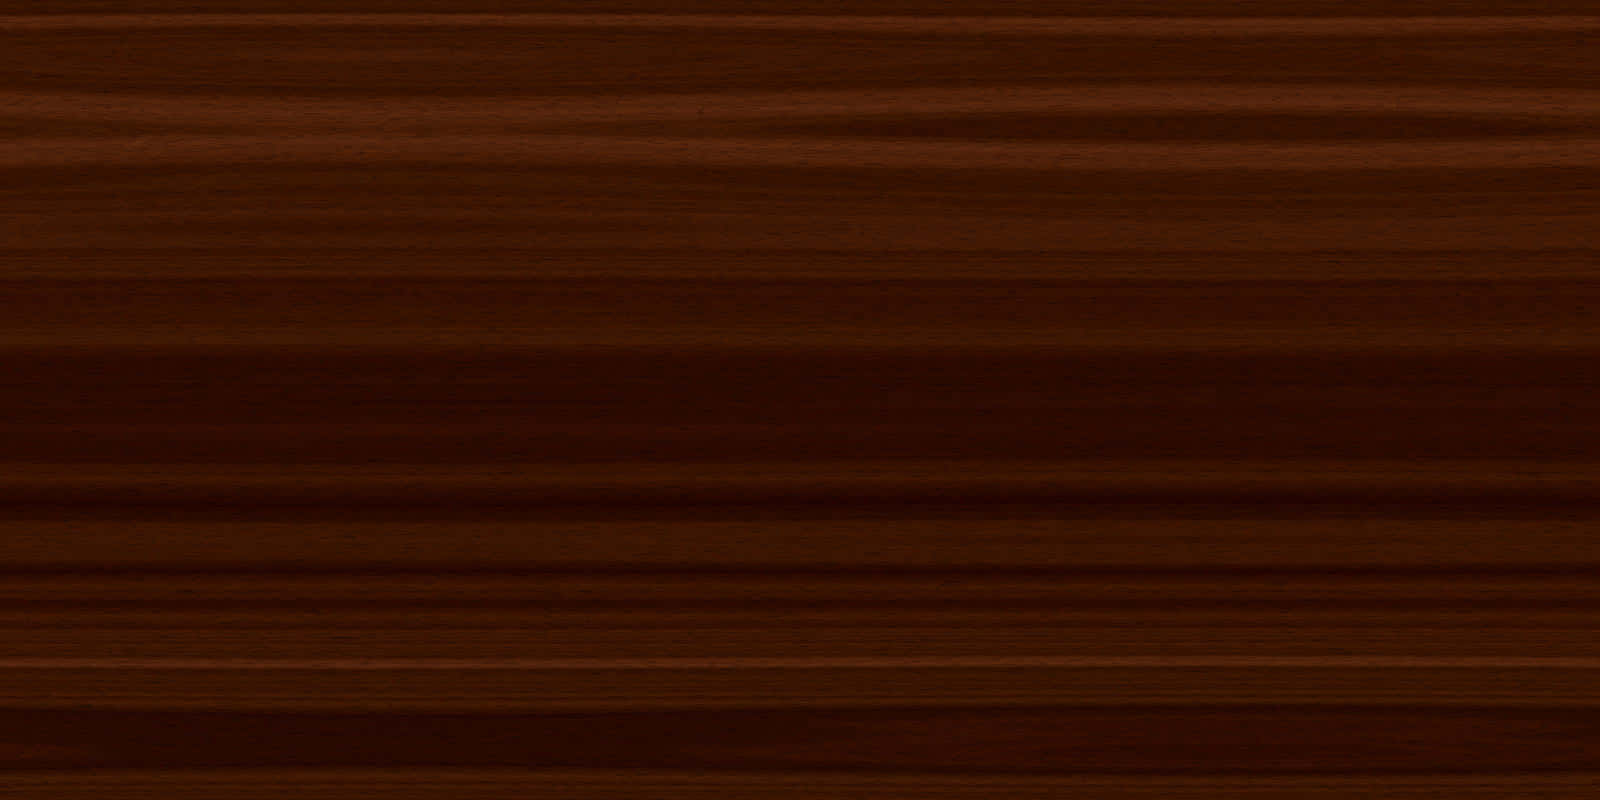 Rich Brown Wood Texture Wallpaper